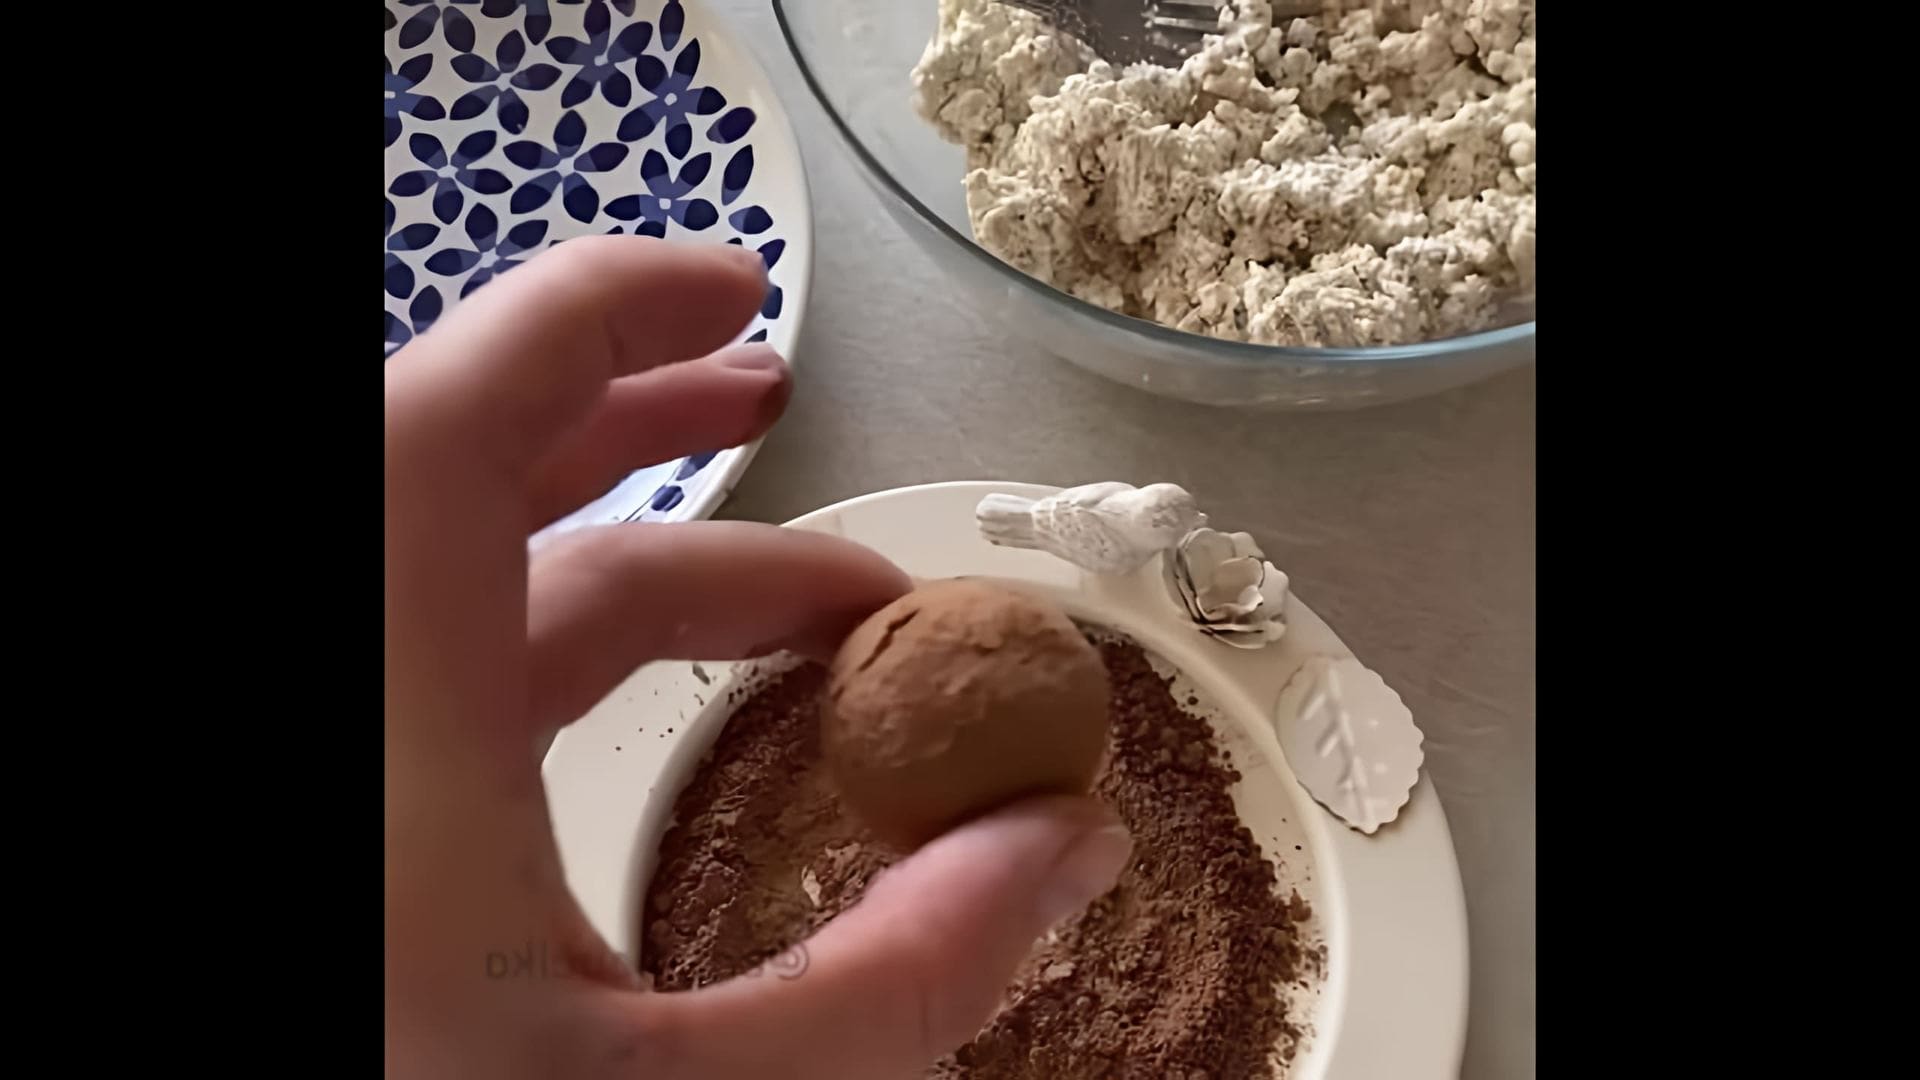 Видео-ролик под названием "Как приготовить белковые конфеты (творожные трюфели)" представляет собой пошаговый рецепт приготовления вкусного и полезного десерта